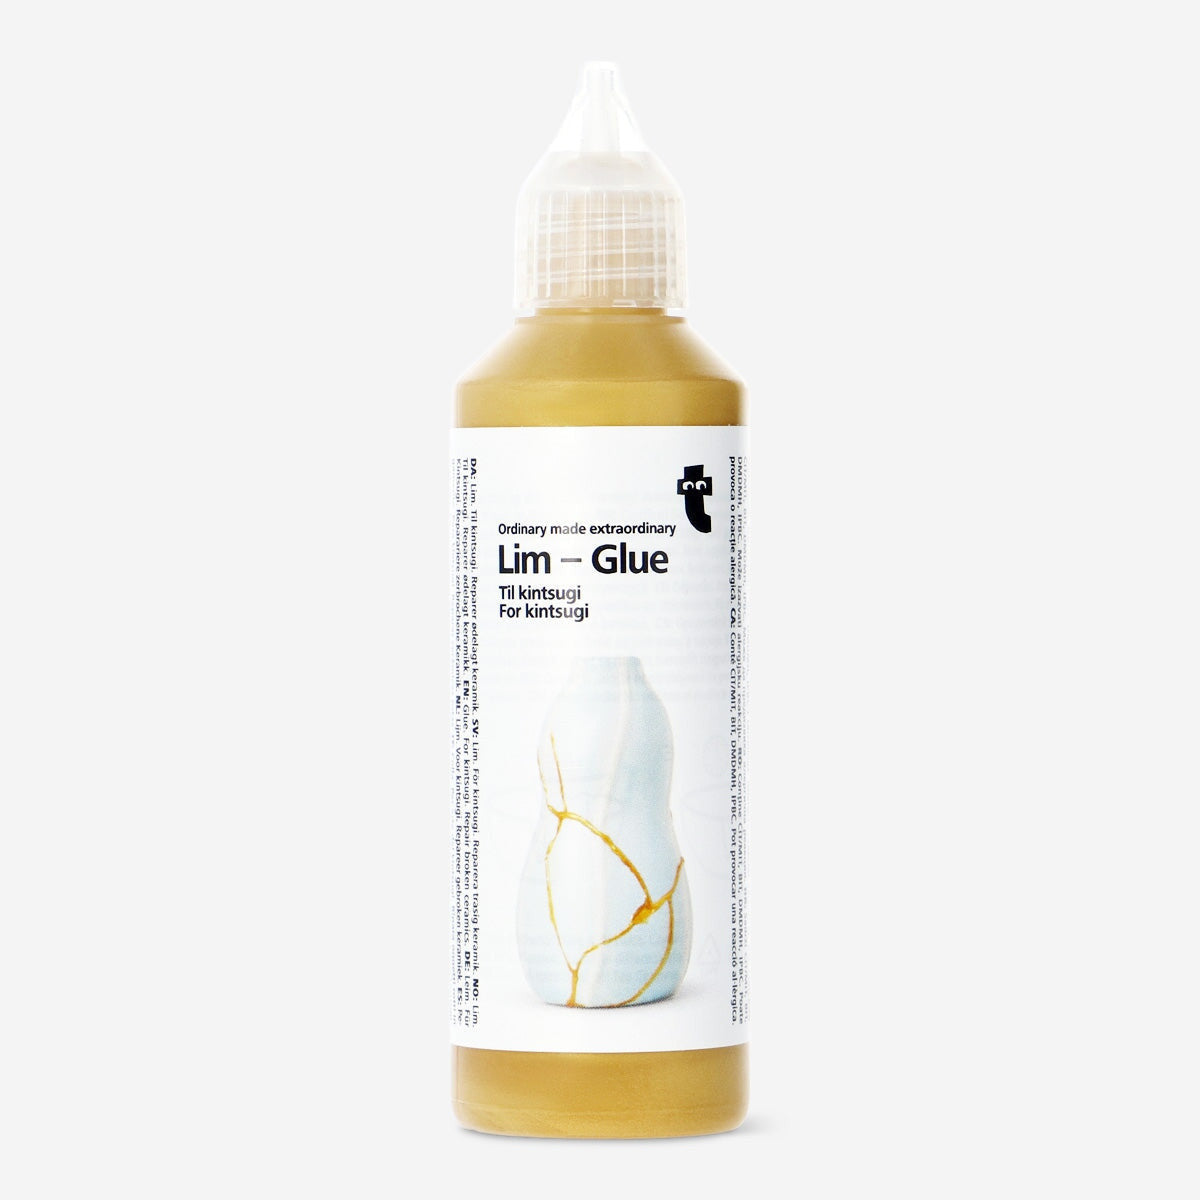 Image of Glue. For kintsugi